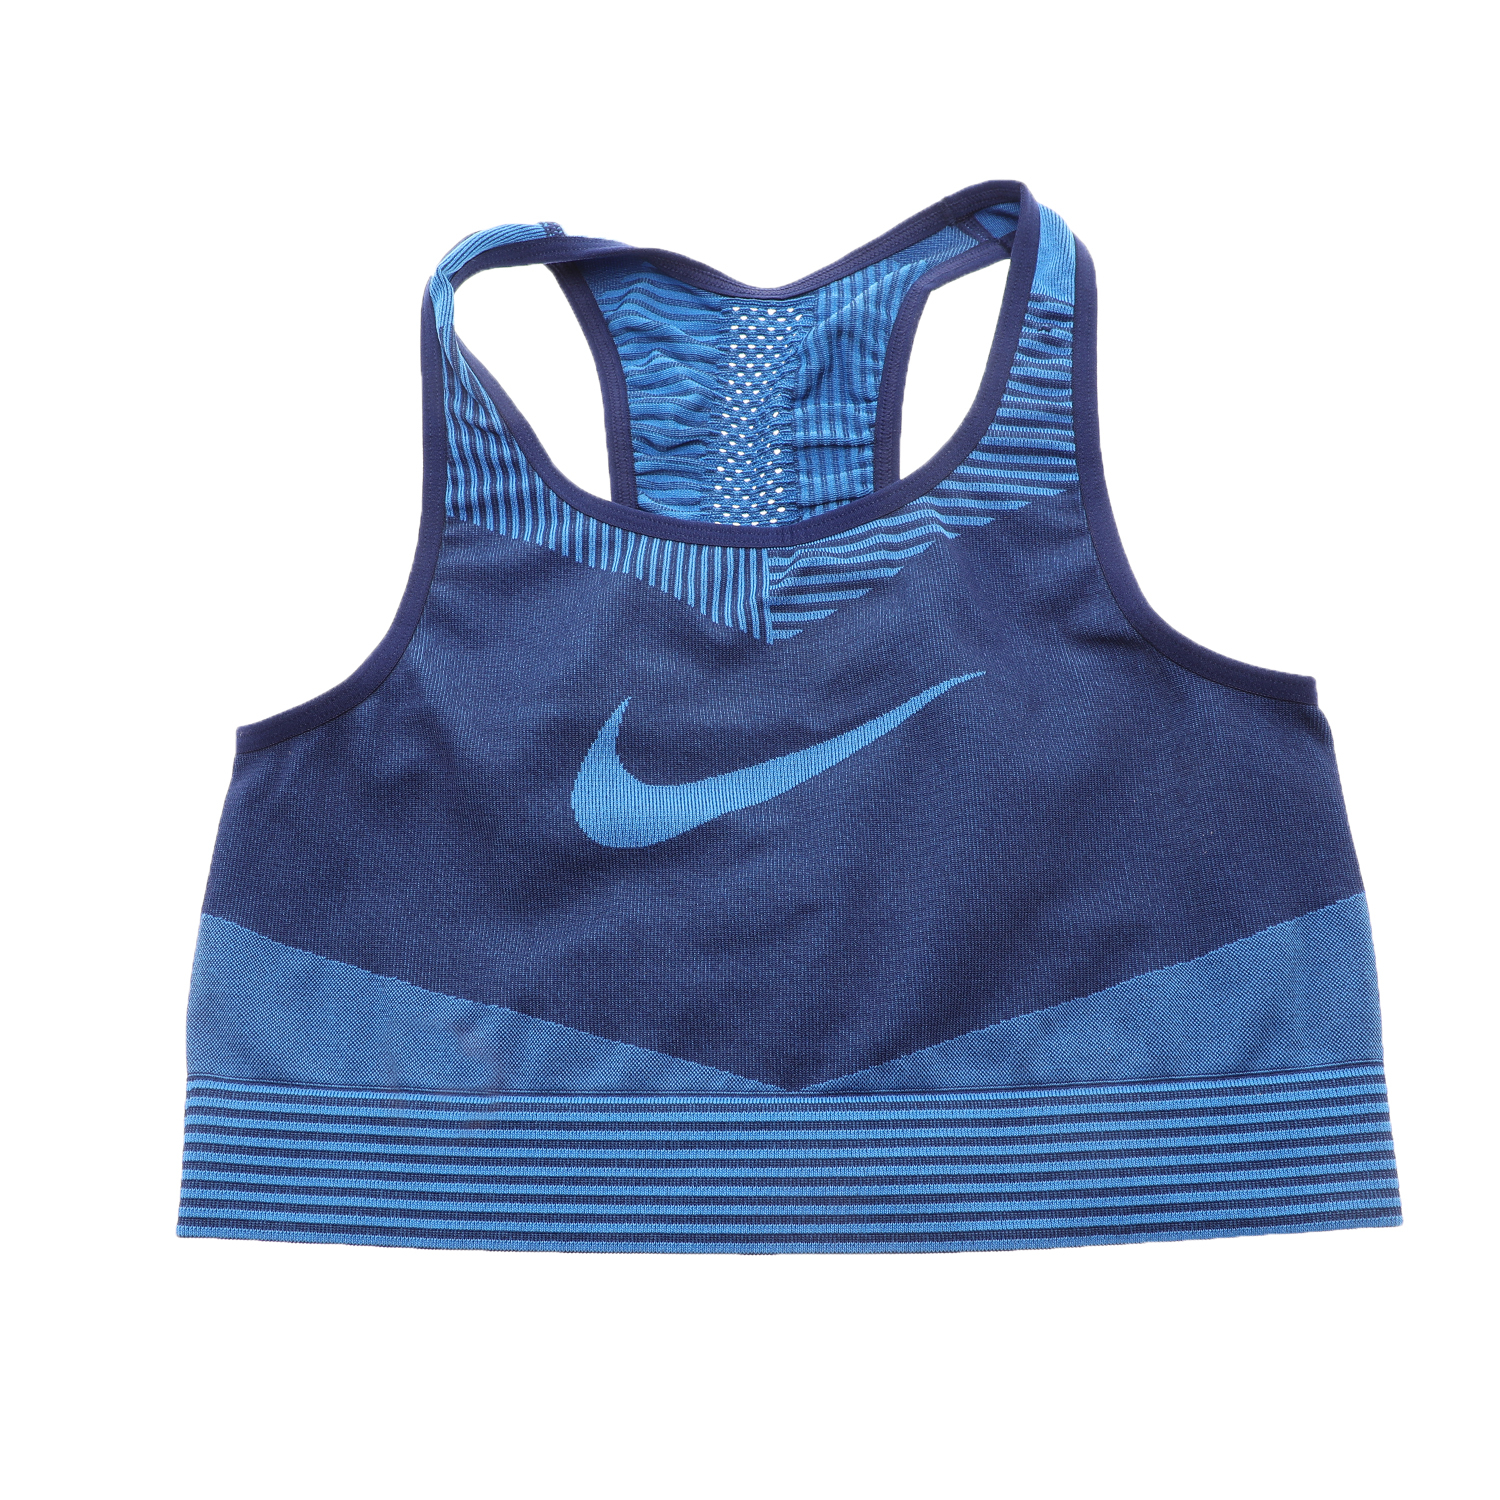 Παιδικά/Girls/Ρούχα/Αθλητικά NIKE - Παιδικό αθλητικό μπουστάκι NIKE FENOM SEAMLESS BRA μπλε